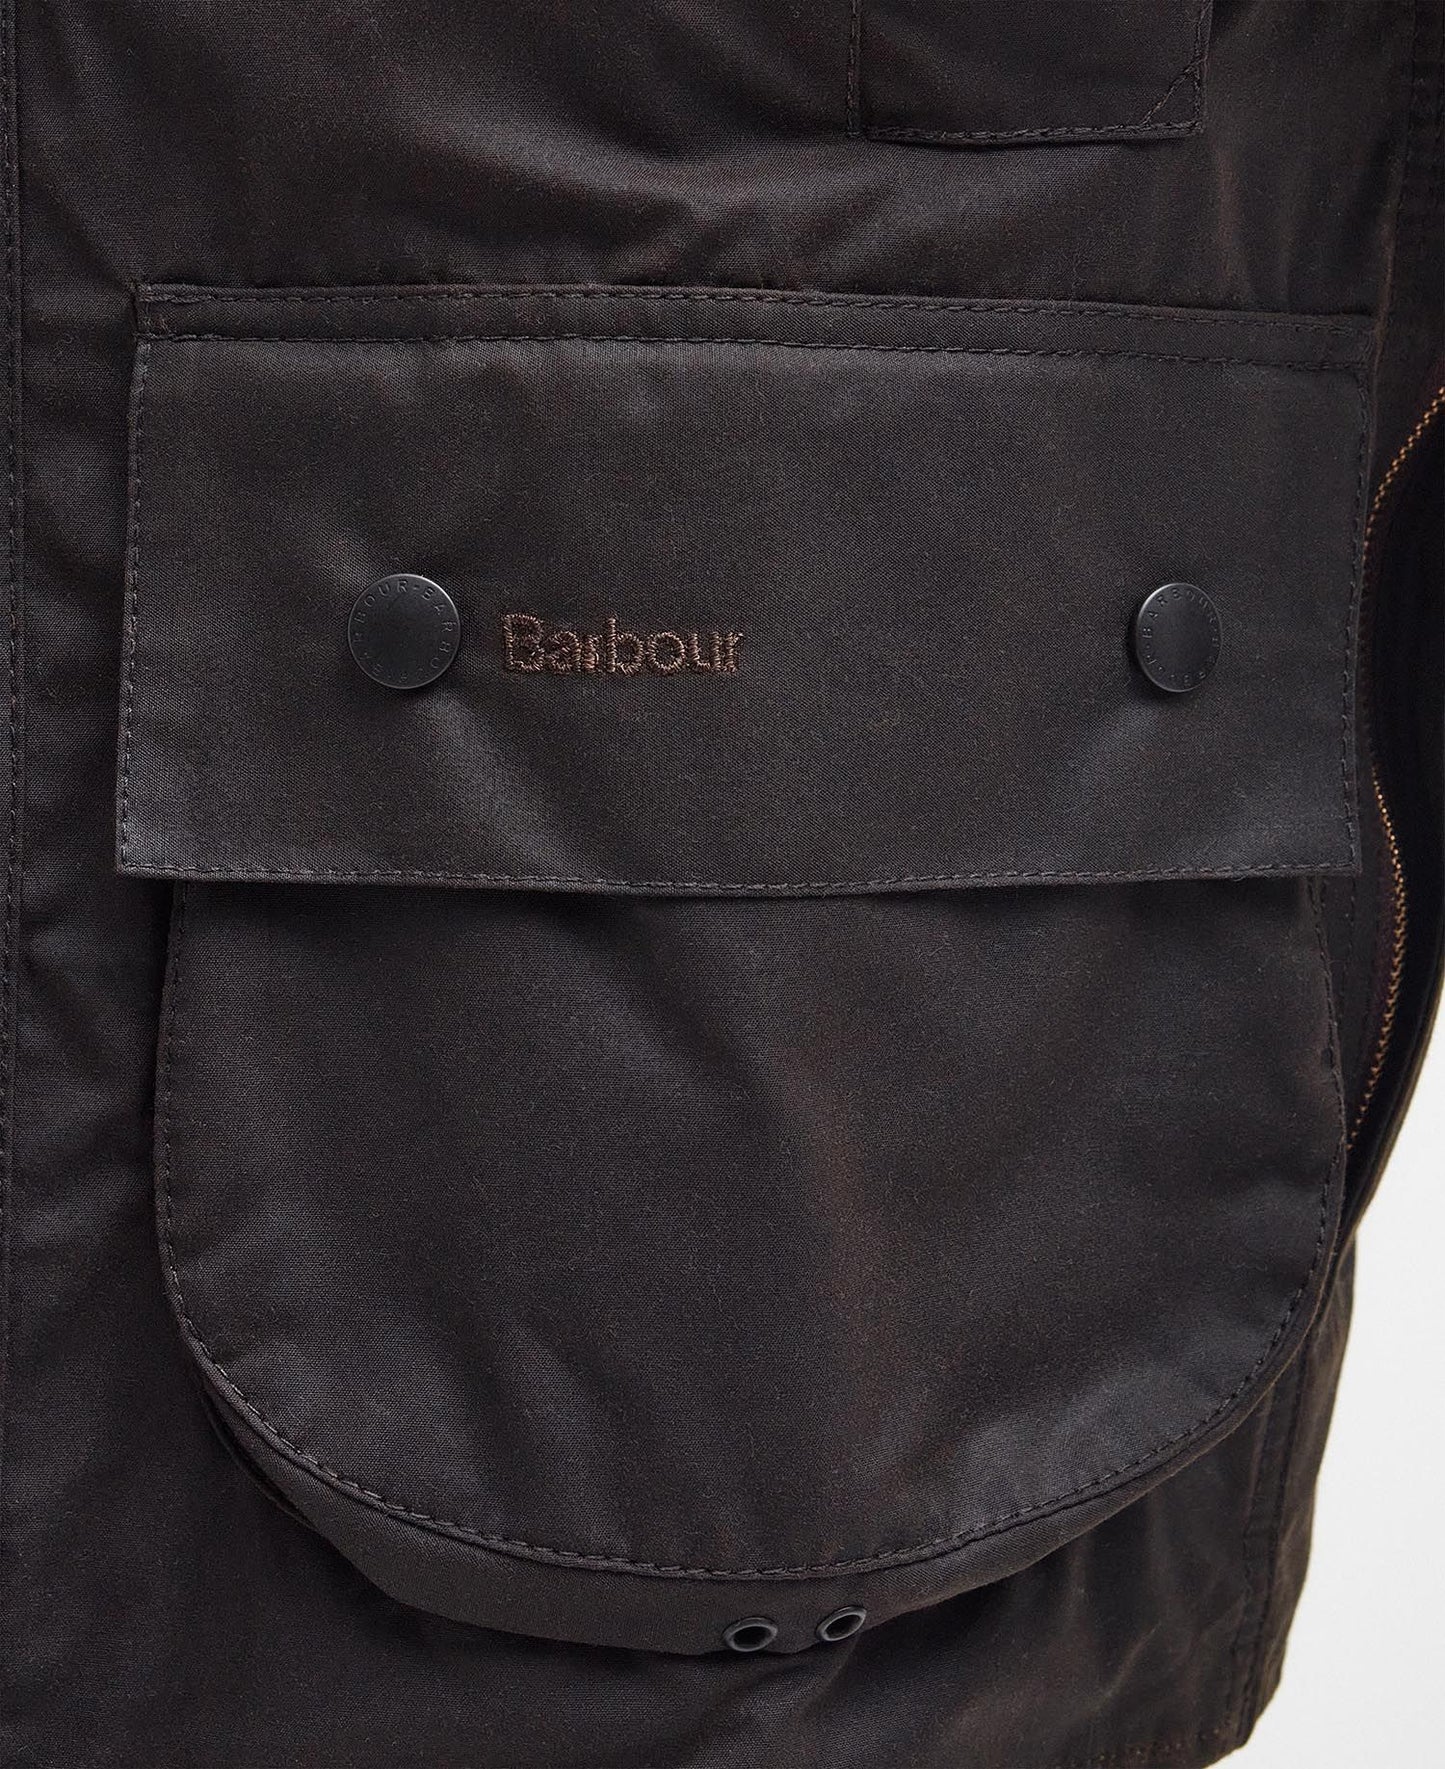 Barbour Wax-jas, model "Beaufort"